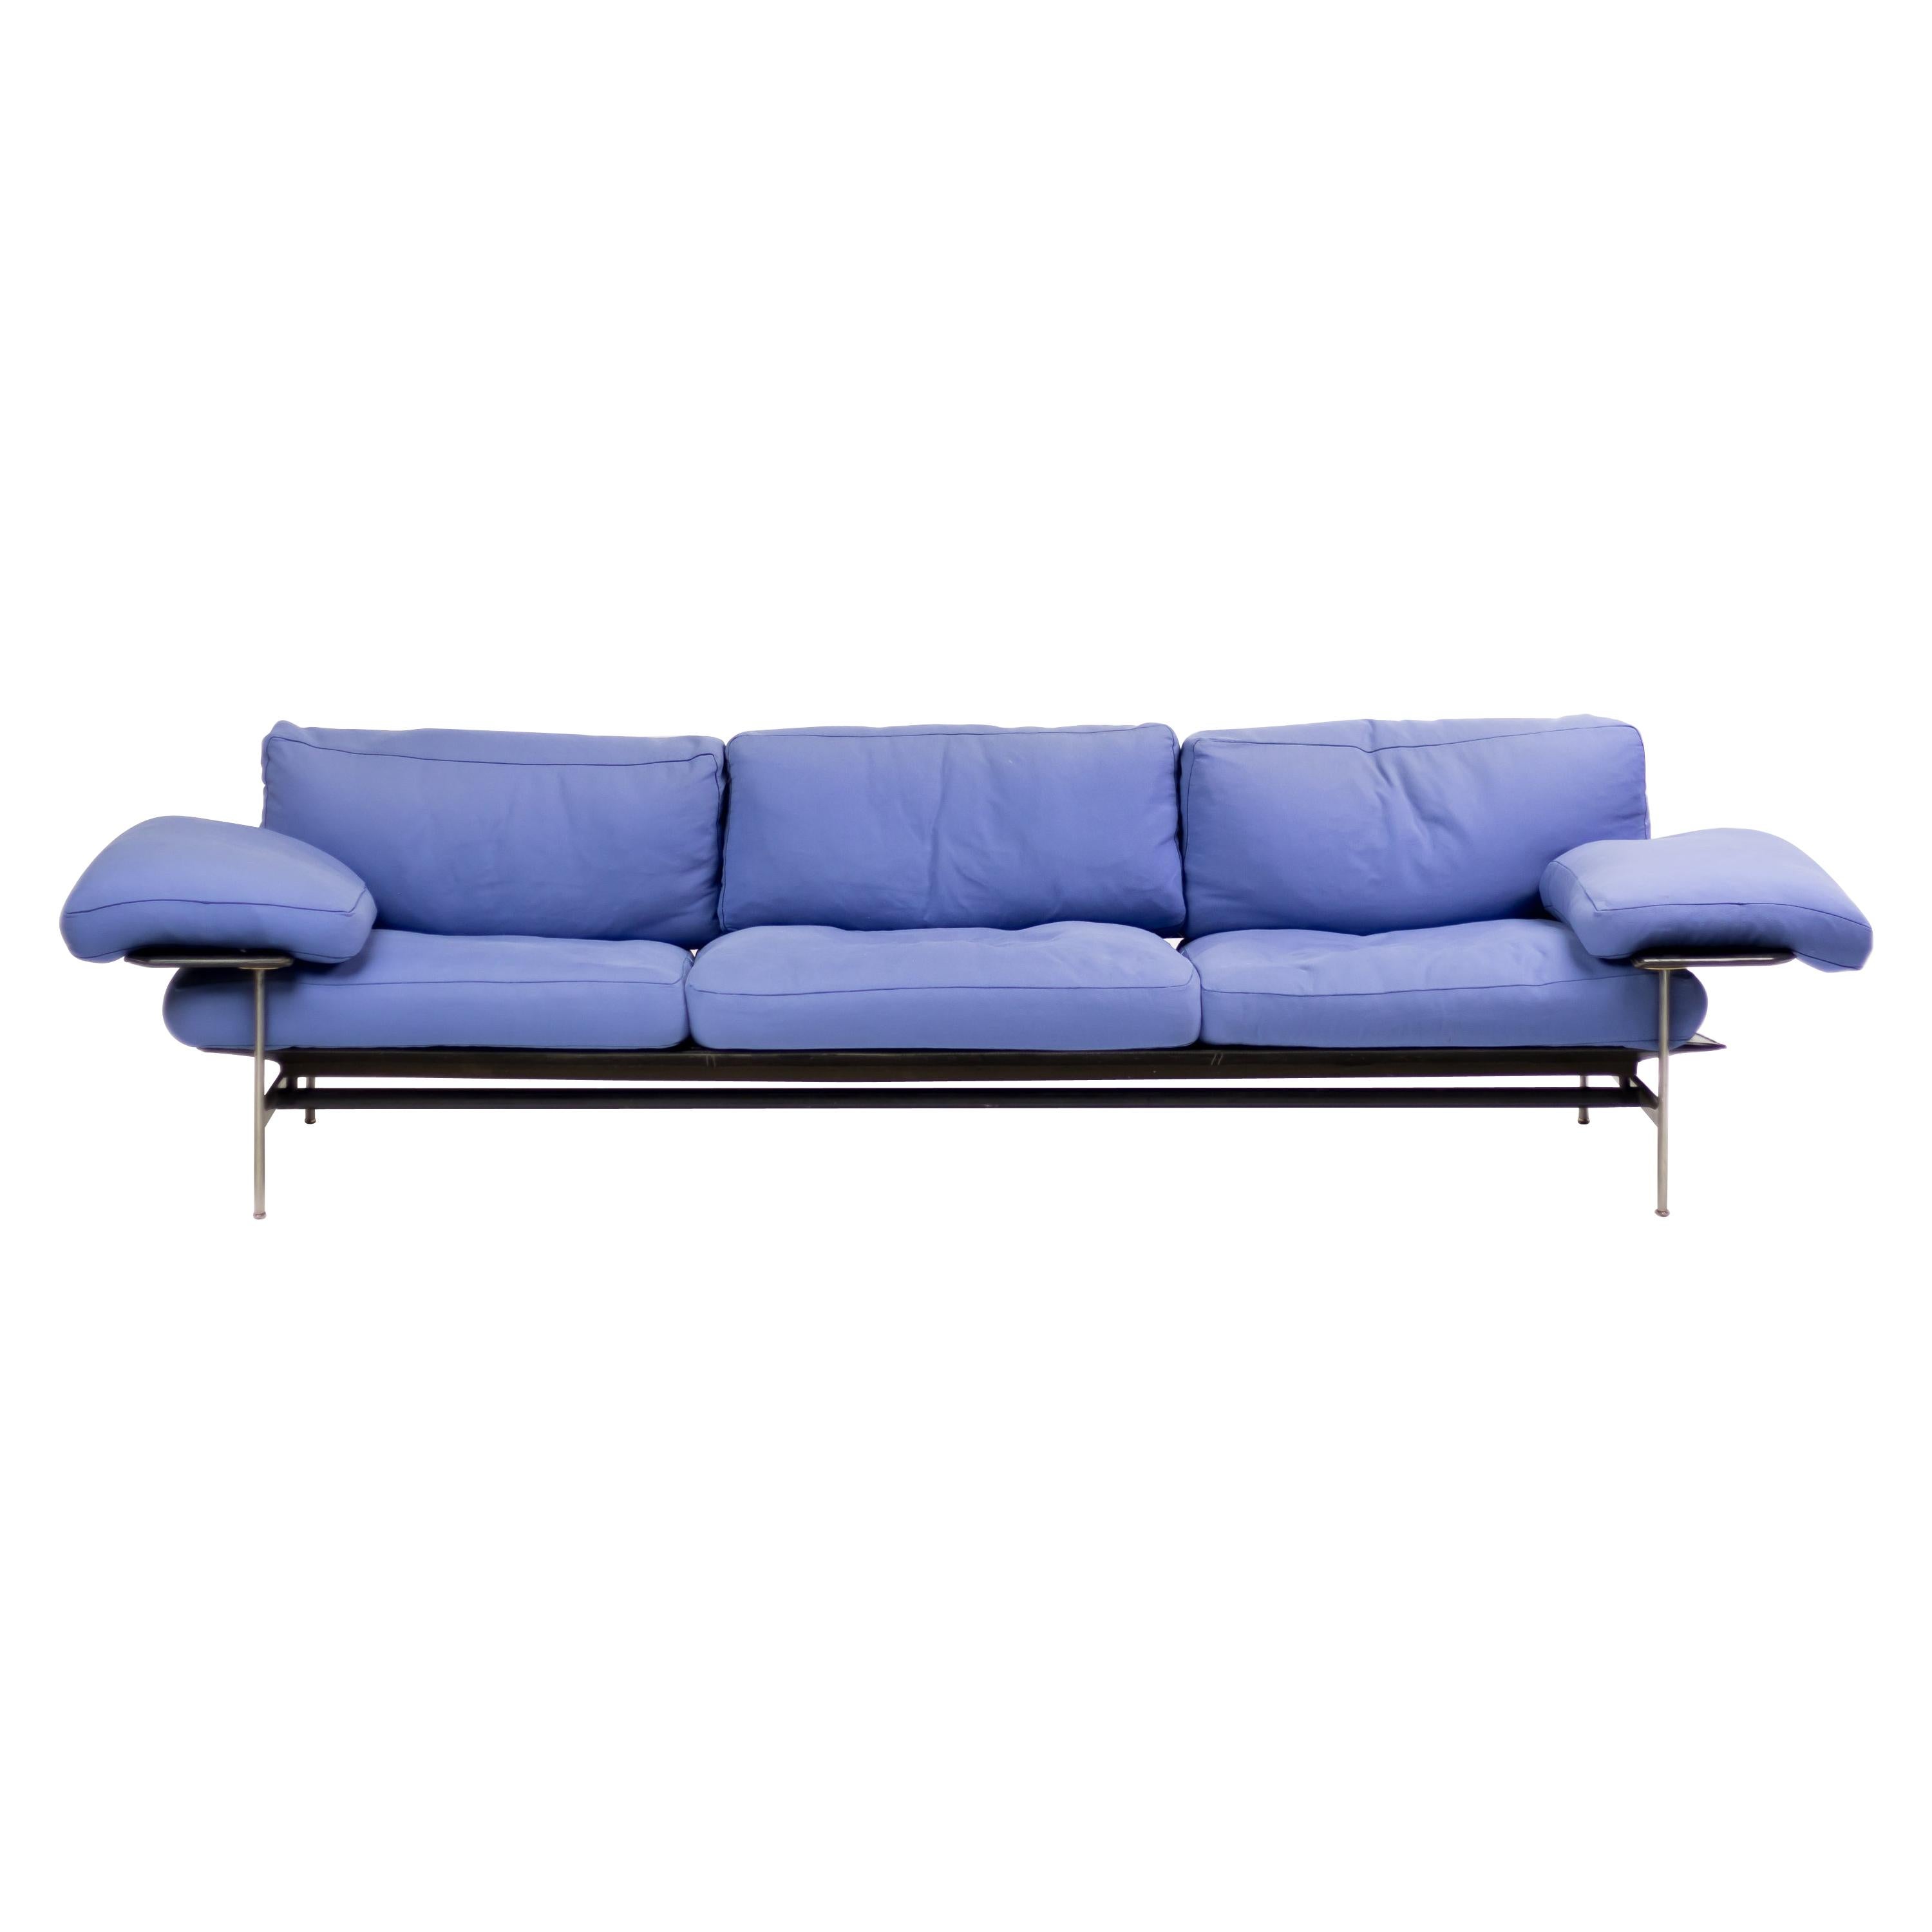 Diesis Sofa by Antonio Citterio